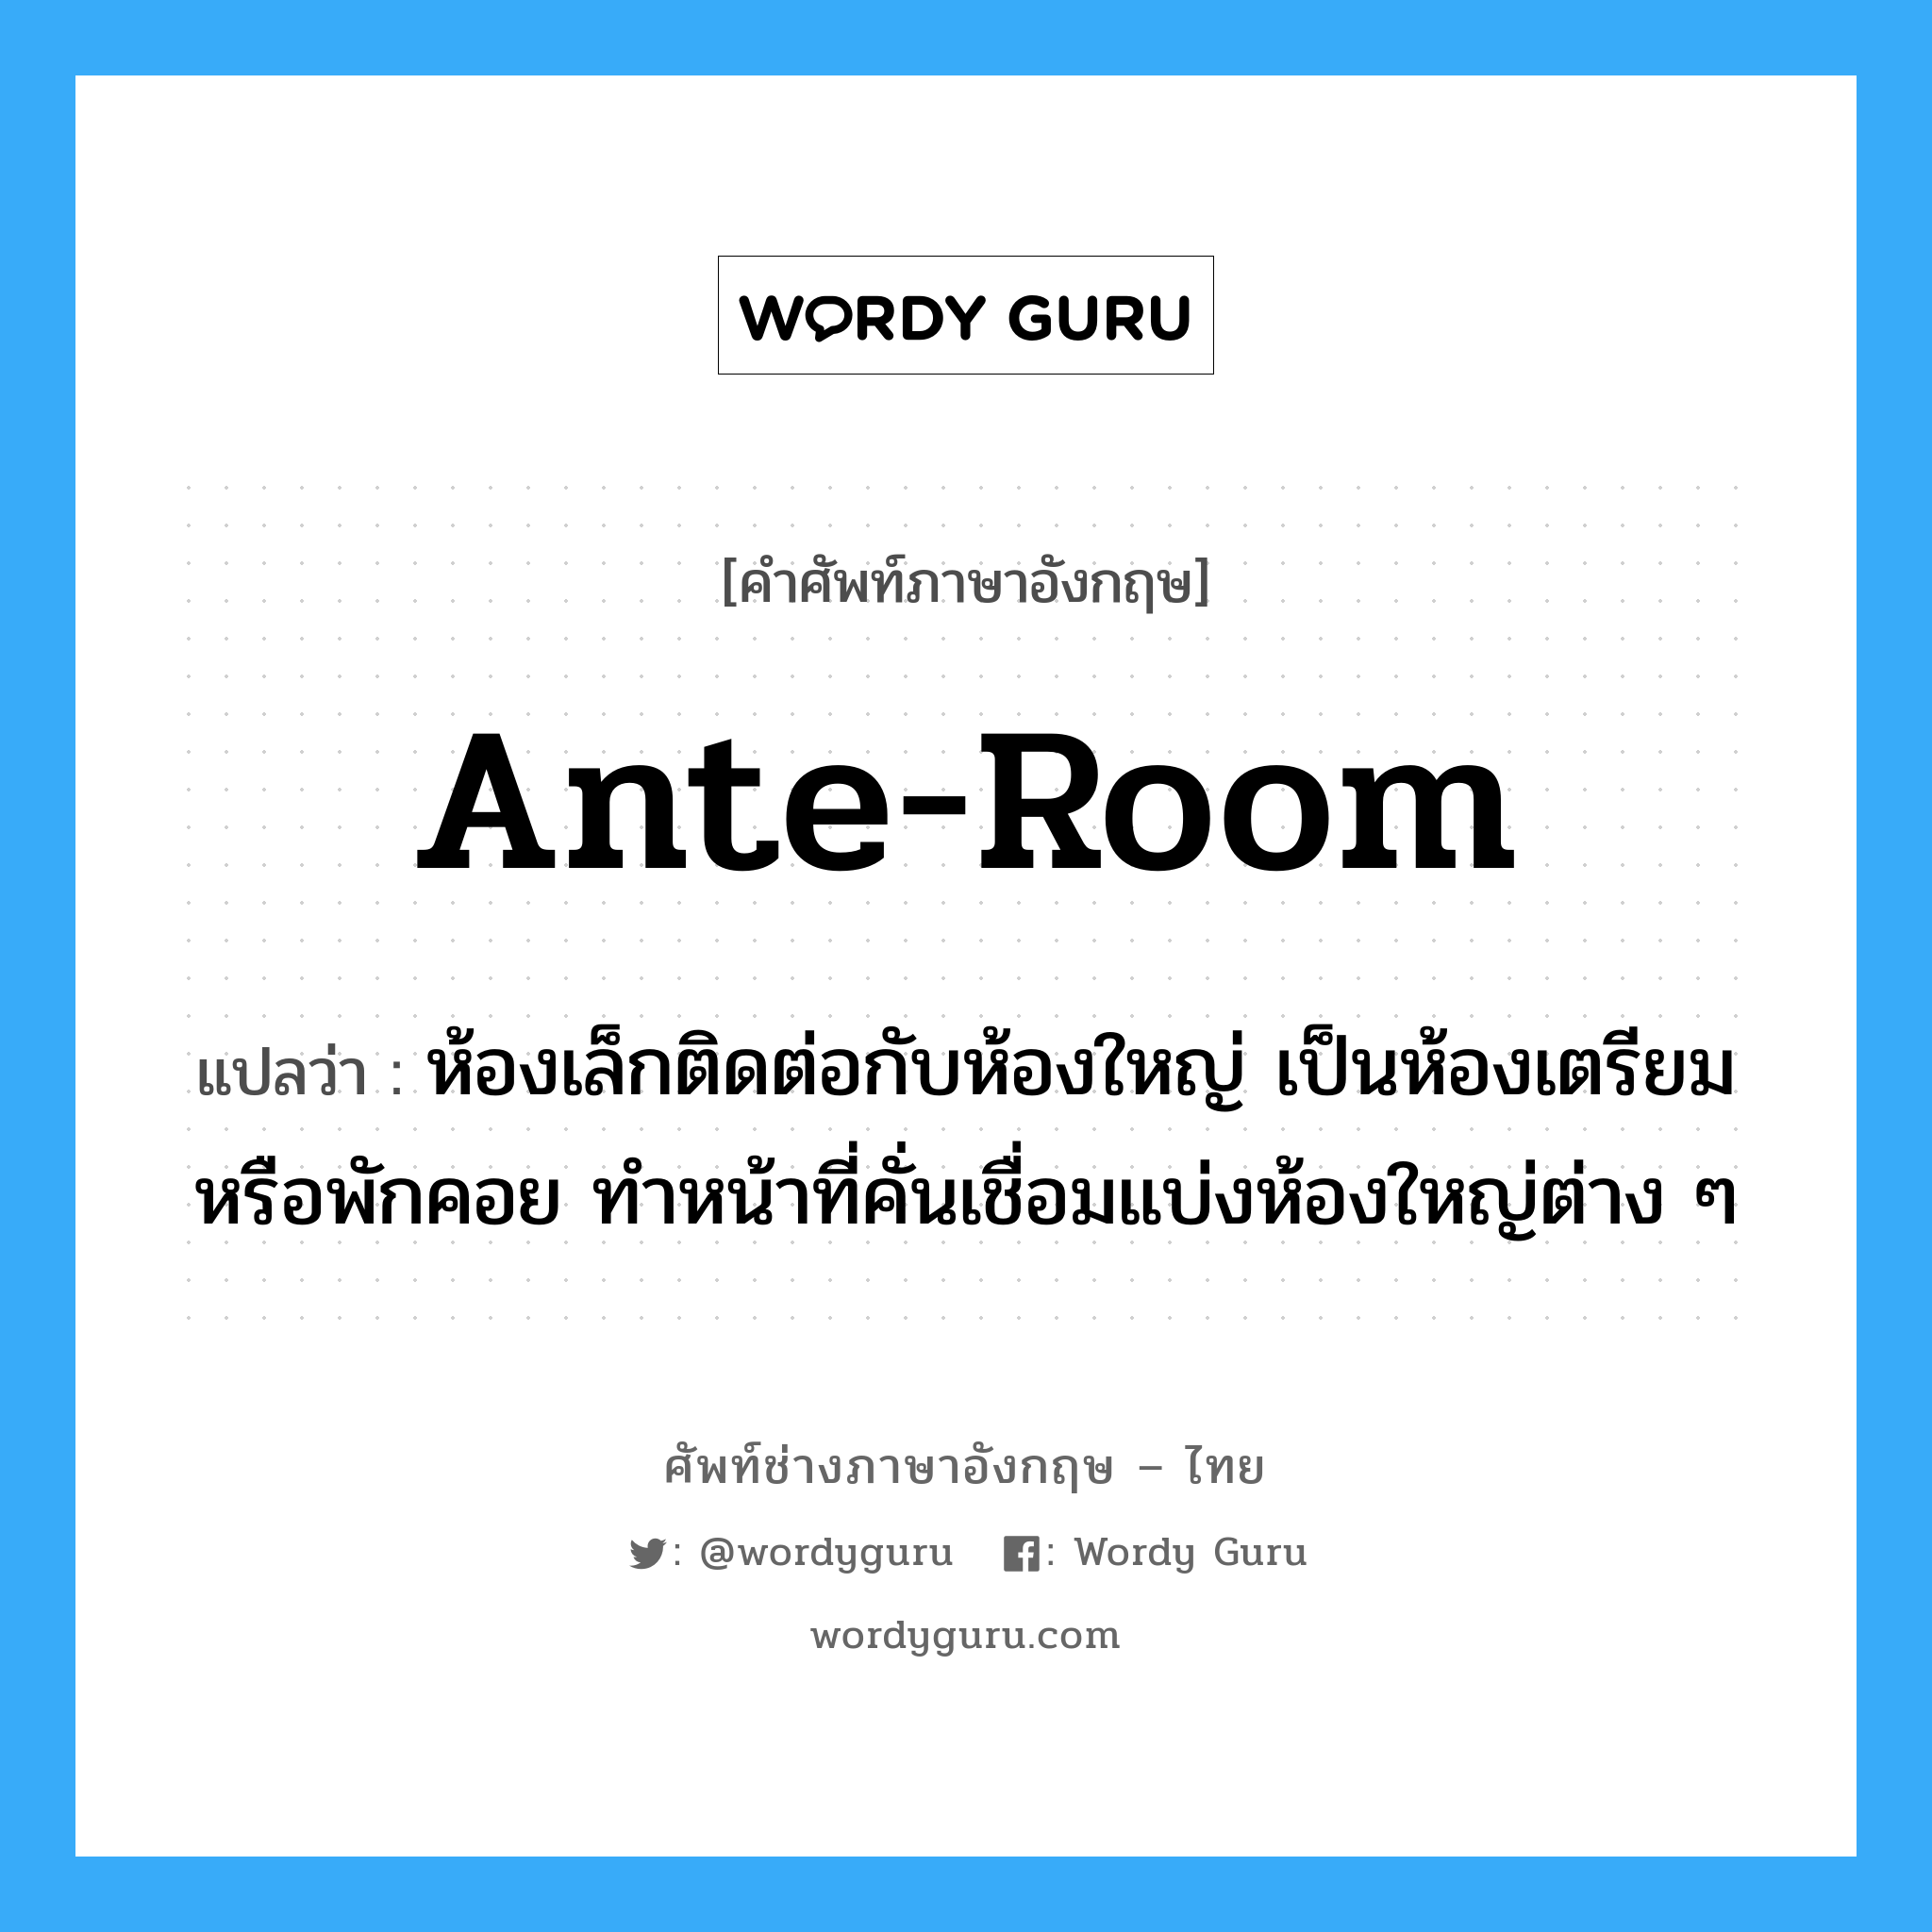 ante-room แปลว่า?, คำศัพท์ช่างภาษาอังกฤษ - ไทย ante-room คำศัพท์ภาษาอังกฤษ ante-room แปลว่า ห้องเล็กติดต่อกับห้องใหญ่ เป็นห้องเตรียมหรือพักคอย ทำหน้าที่คั่นเชื่อมแบ่งห้องใหญ่ต่าง ๆ